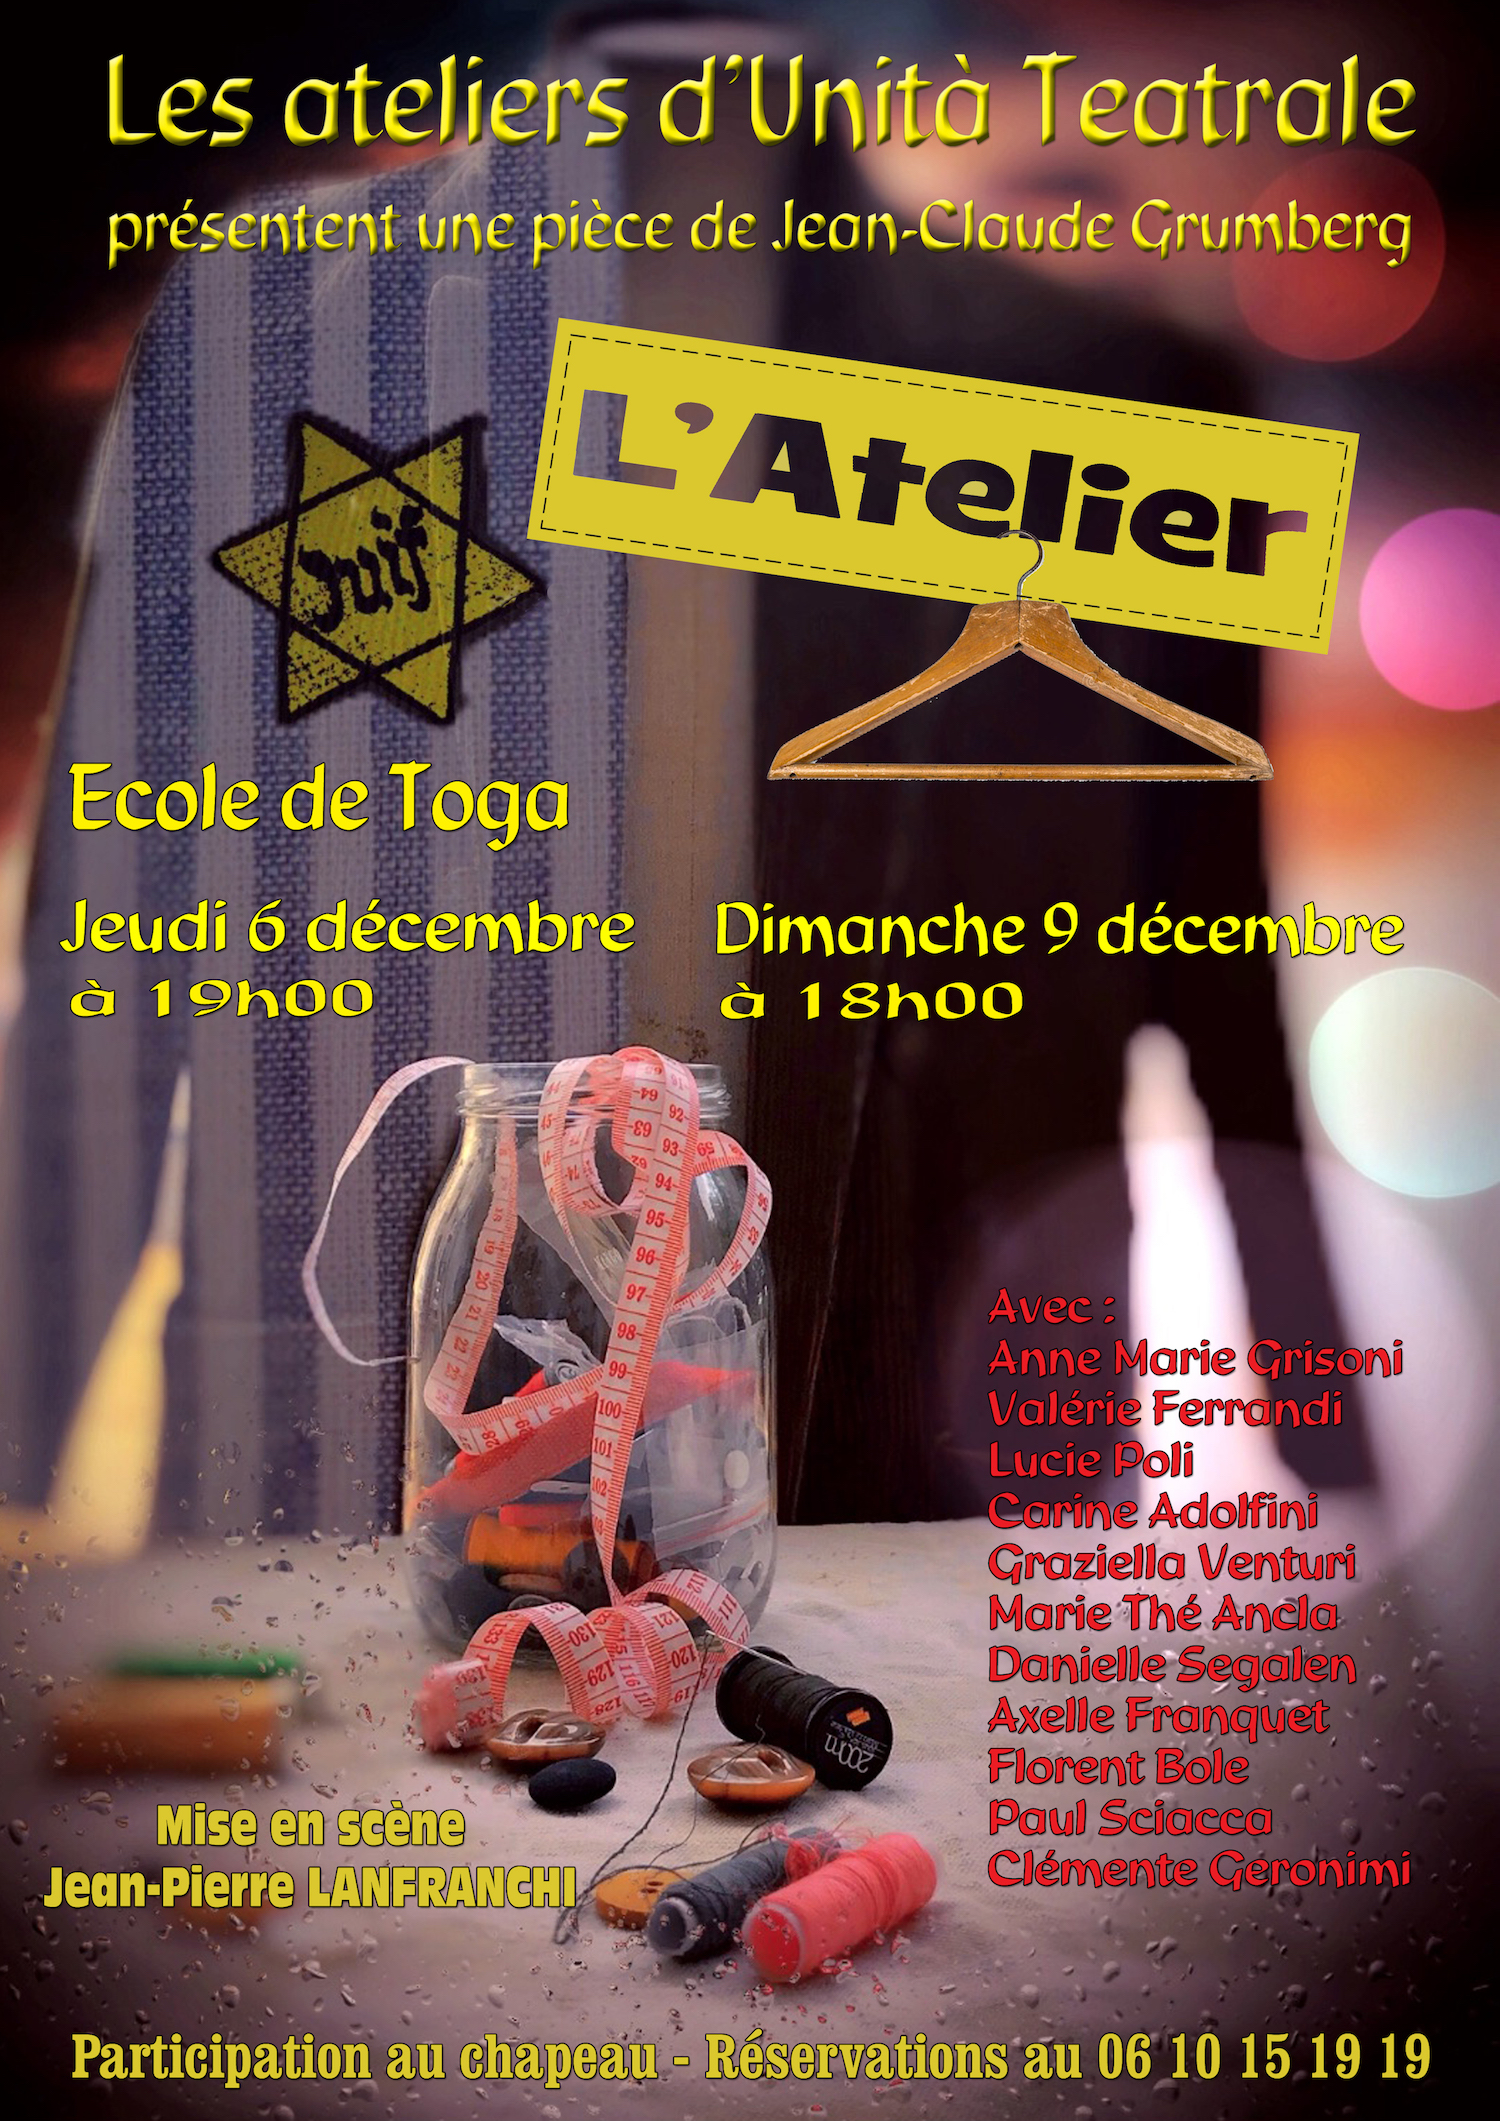 Théâtre : "L'Atelier" à l'école de Toga